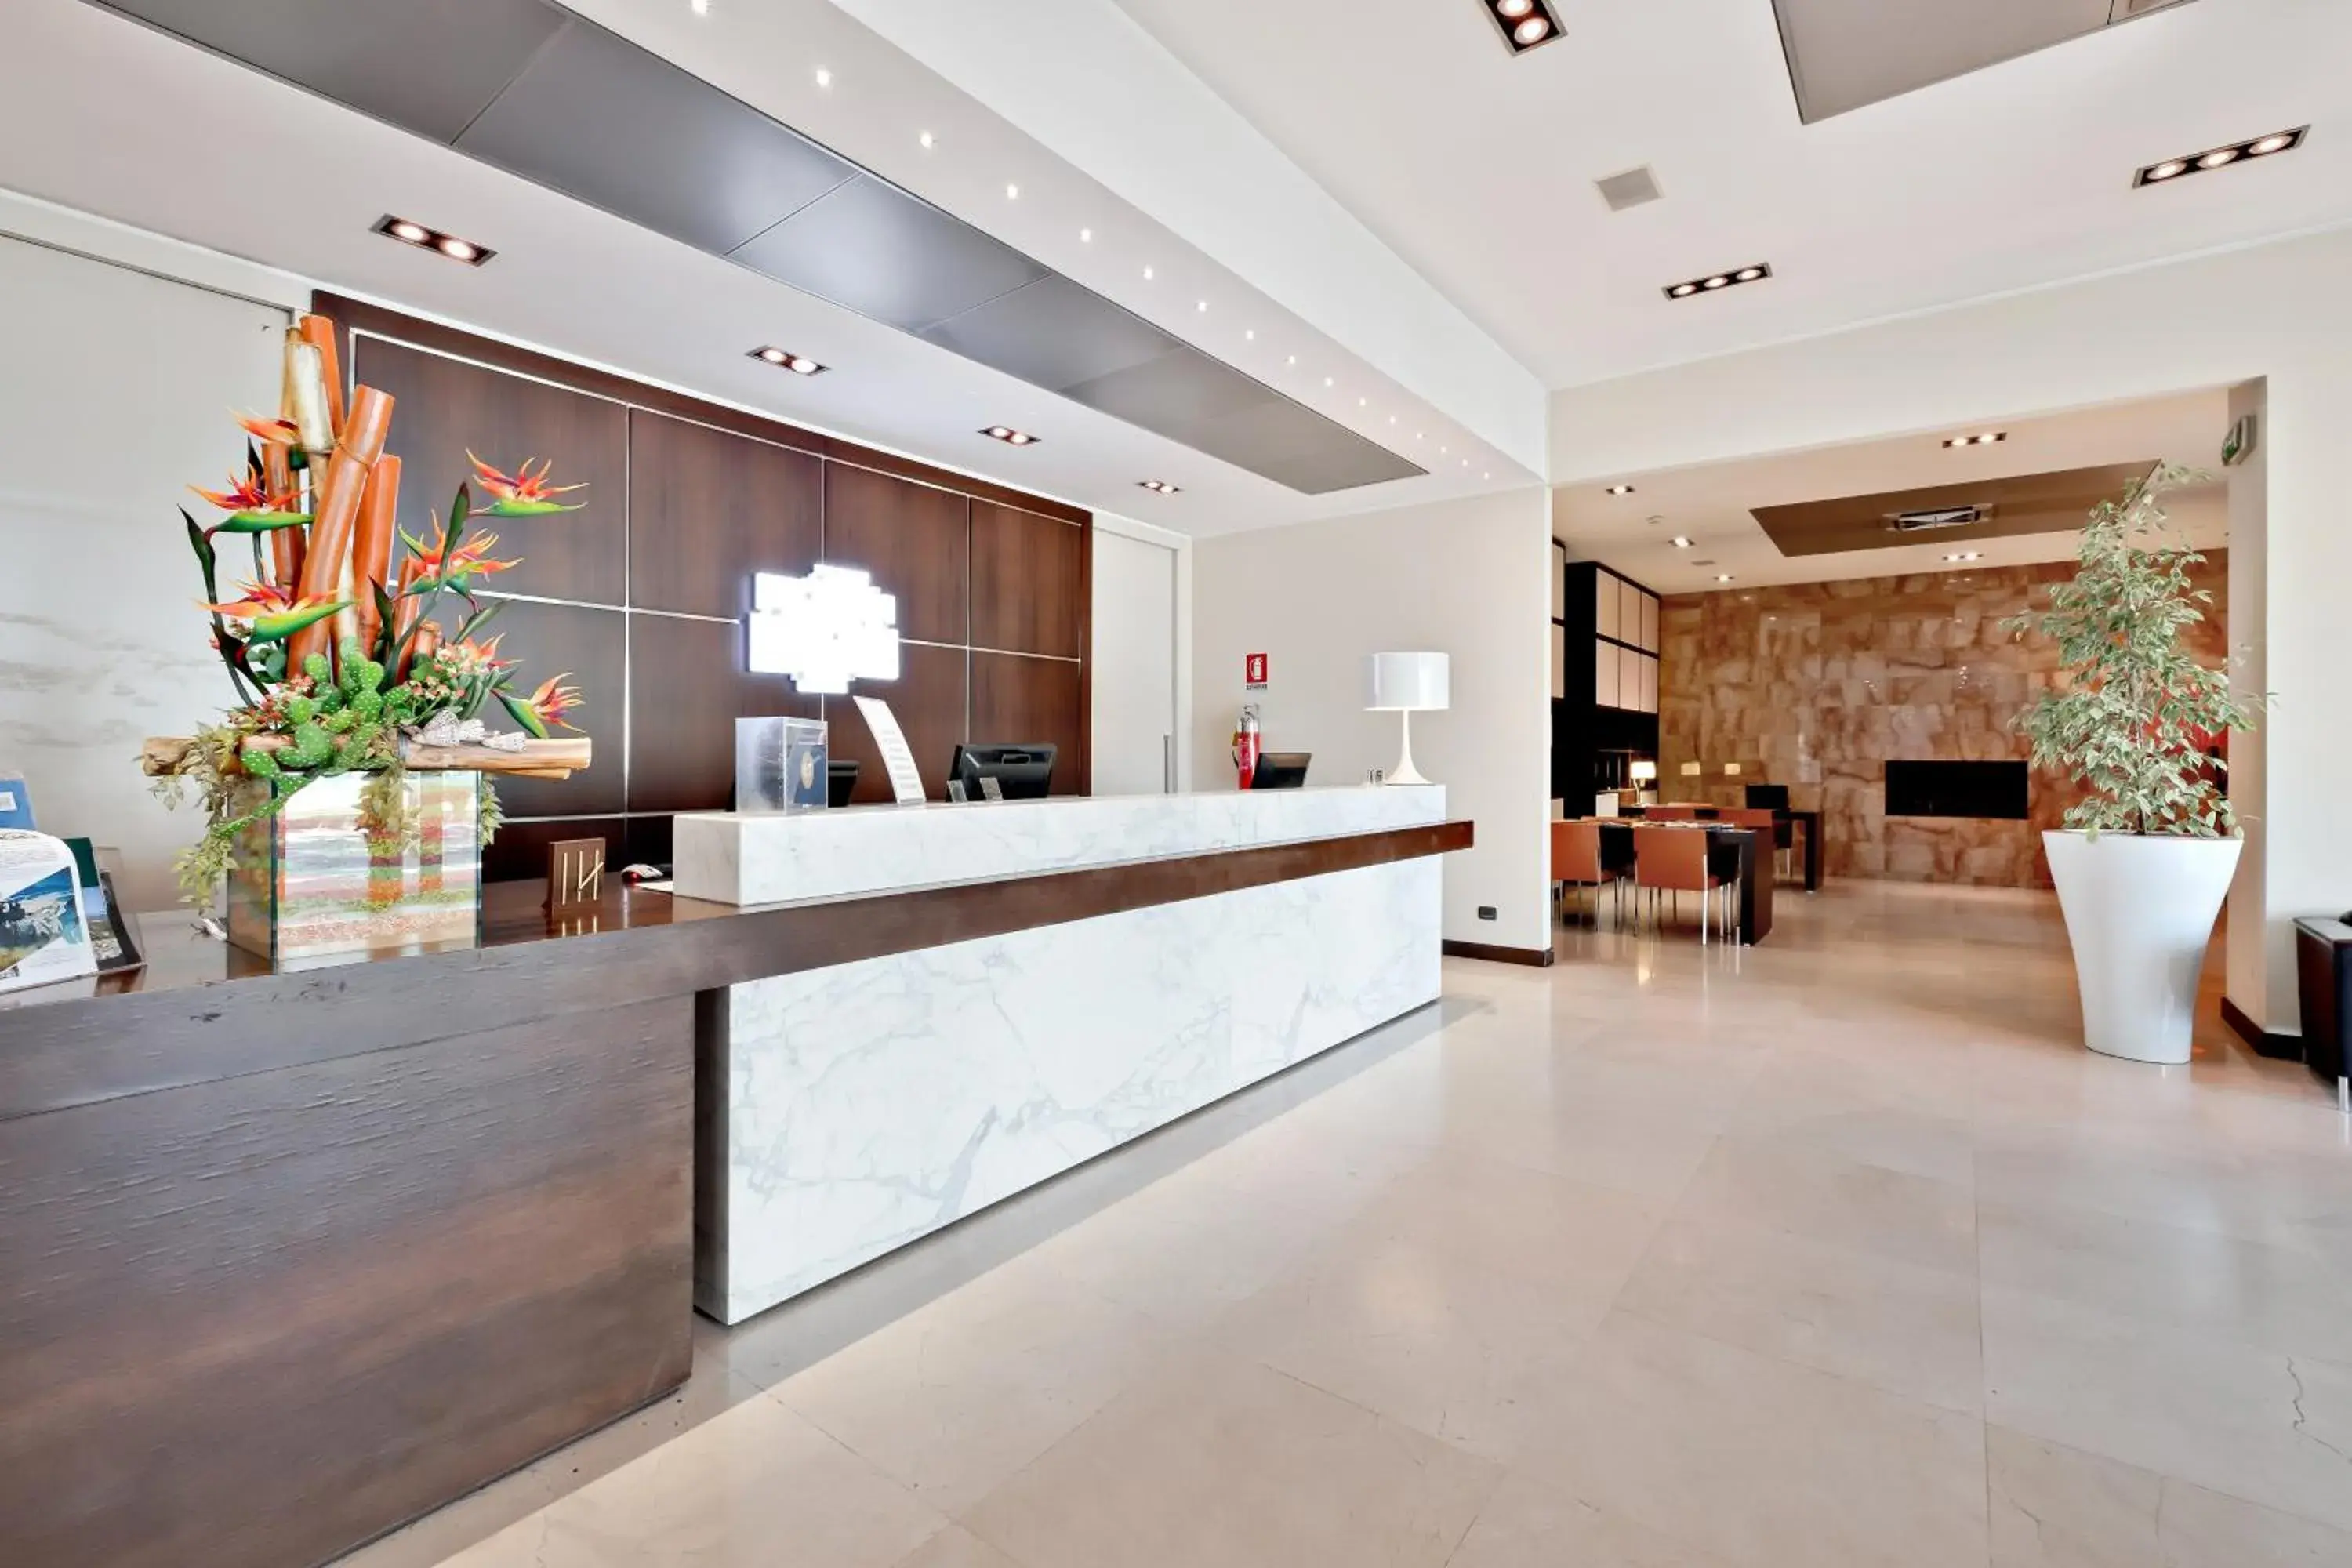 Lobby or reception, Lobby/Reception in Italiana Hotels Cosenza